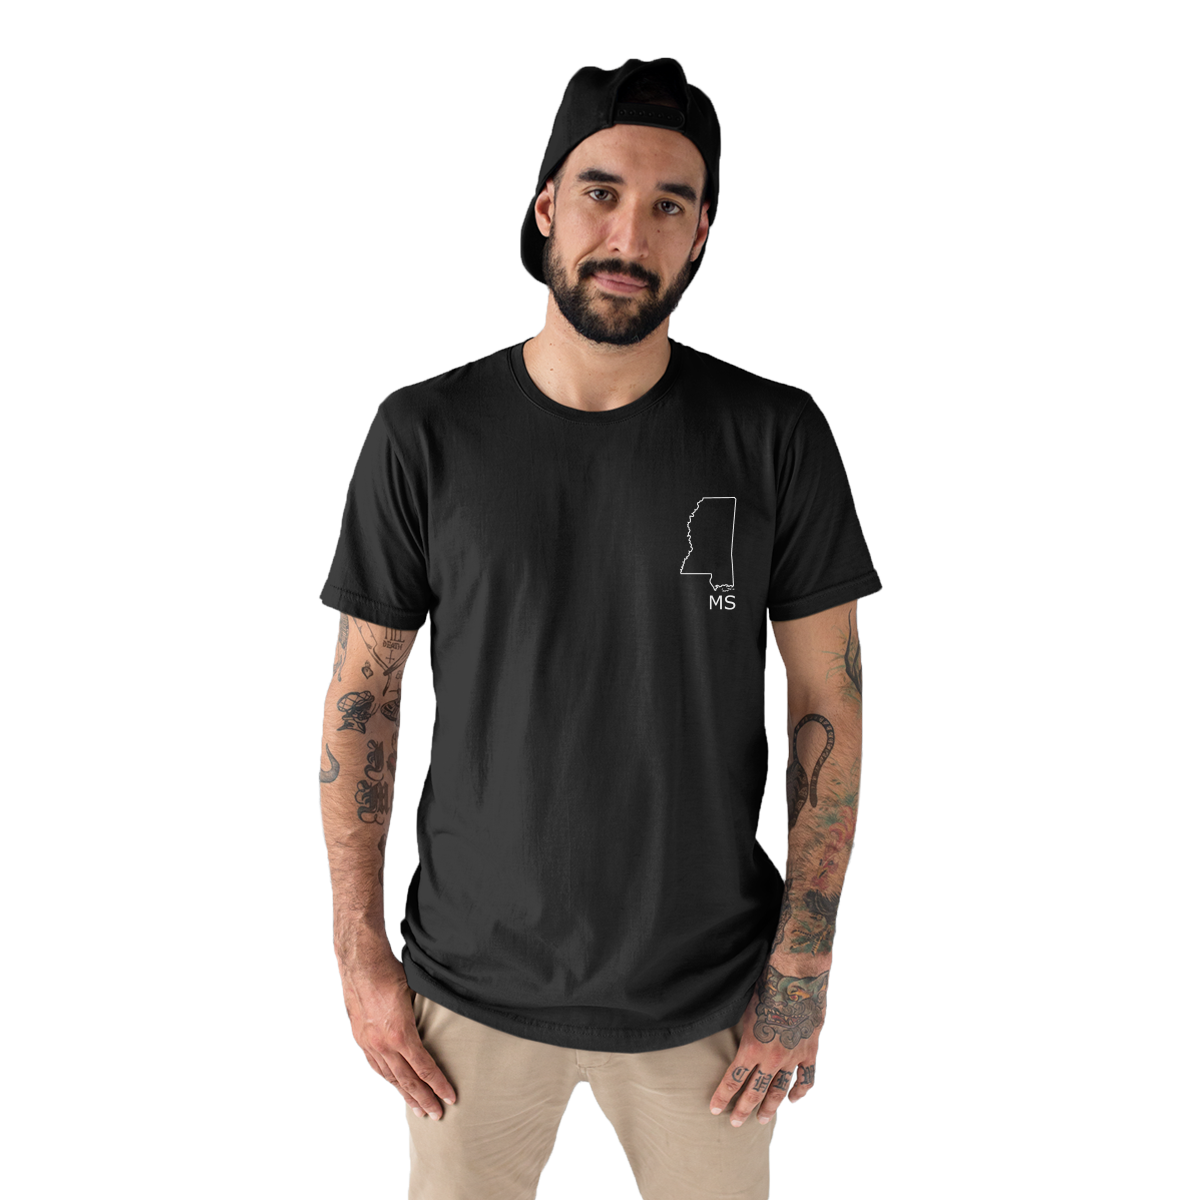 Mississippi Men's T-shirt | Black